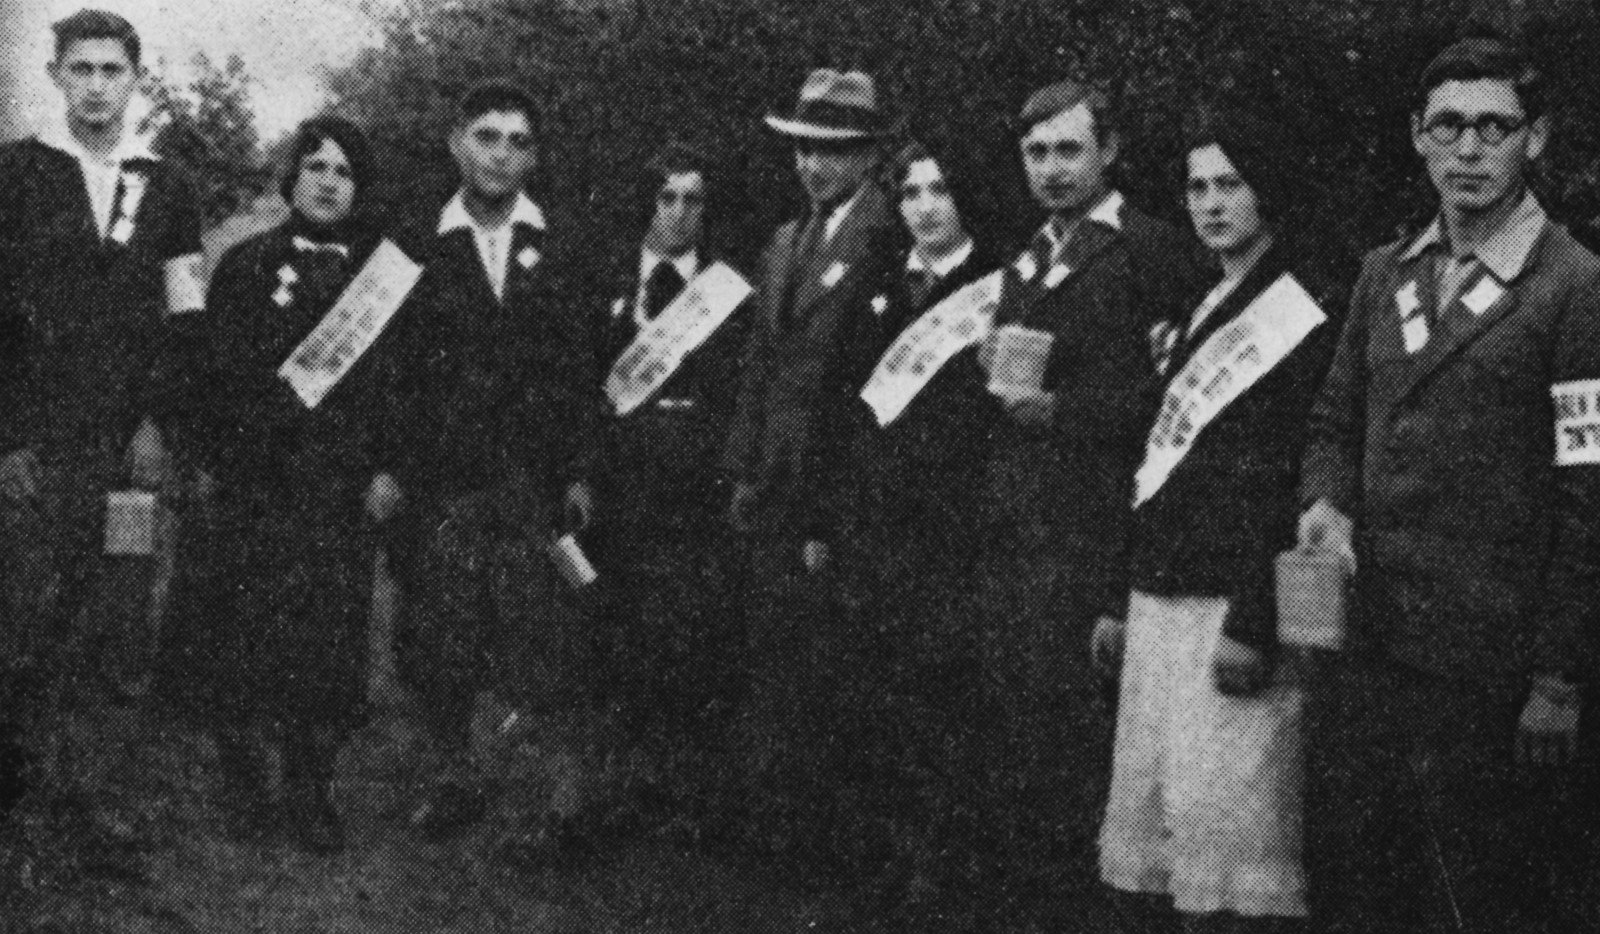 Czarno-białe zdjęcie. Grupa elegancko ubranych kobiet i mężczyzn pozuje do zdjęcia. Kobiety przepasane są białymi szarfami.